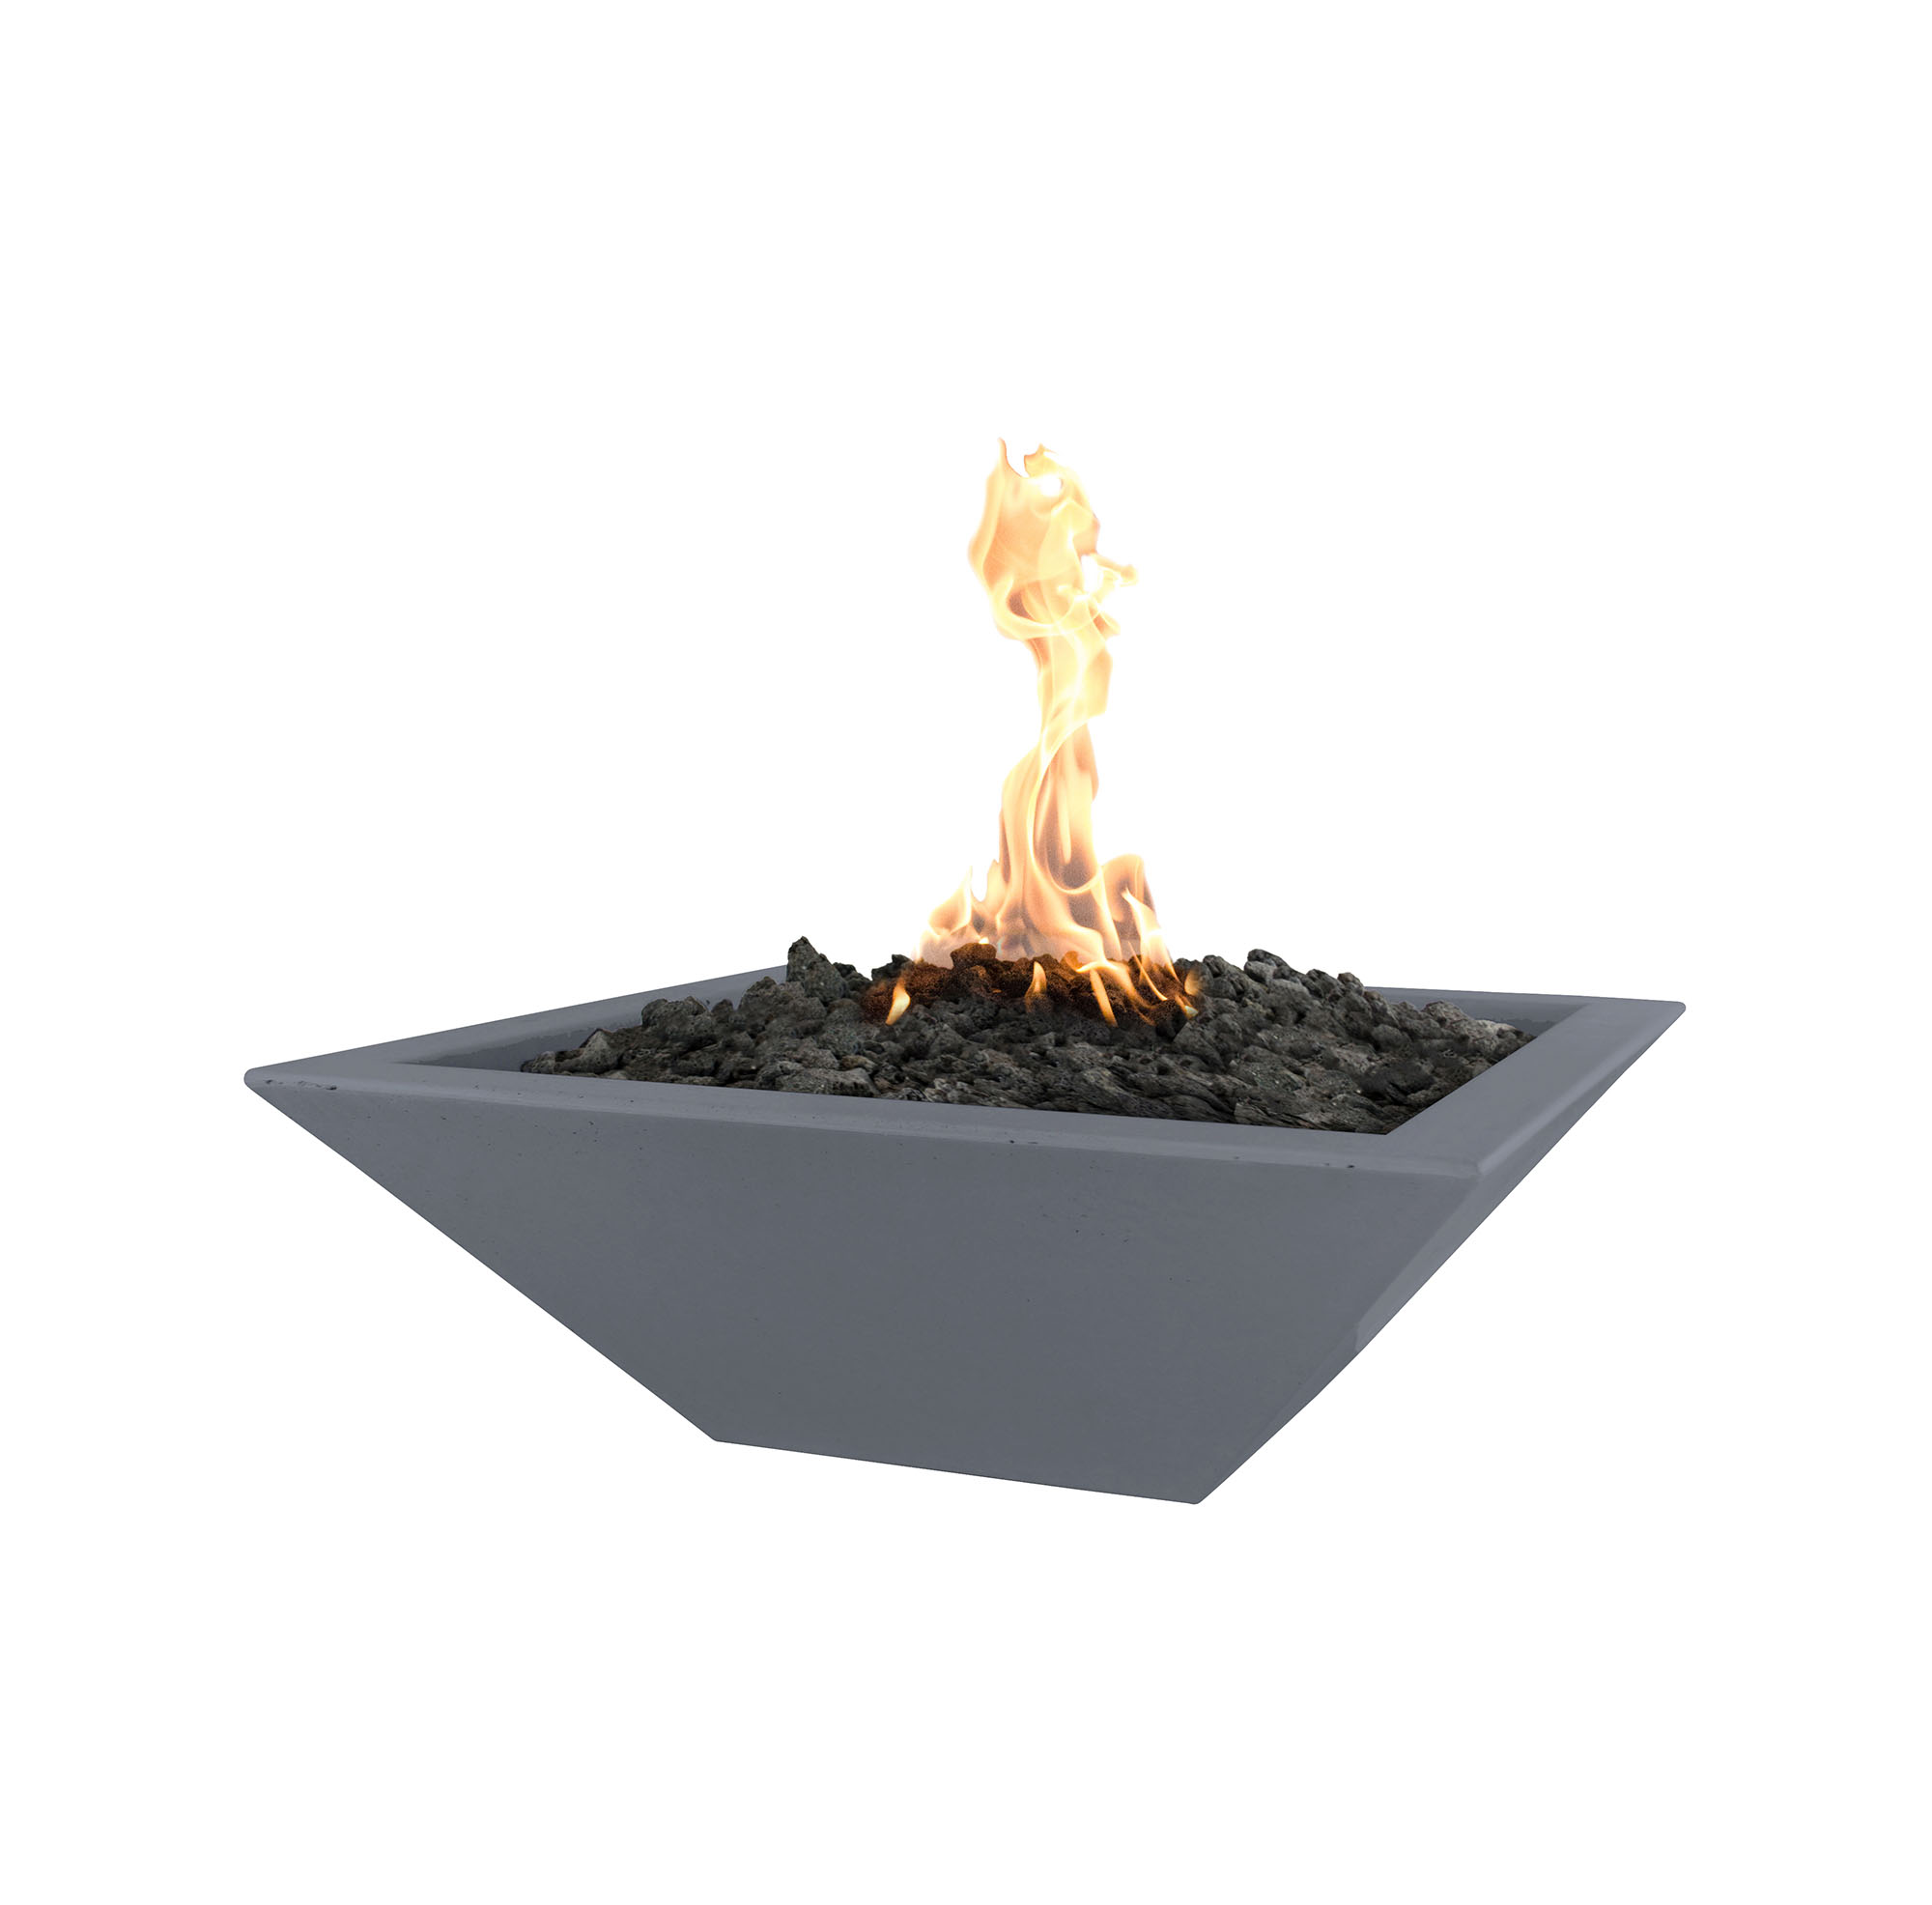 Maya Concrete Fire Bowl - Gray